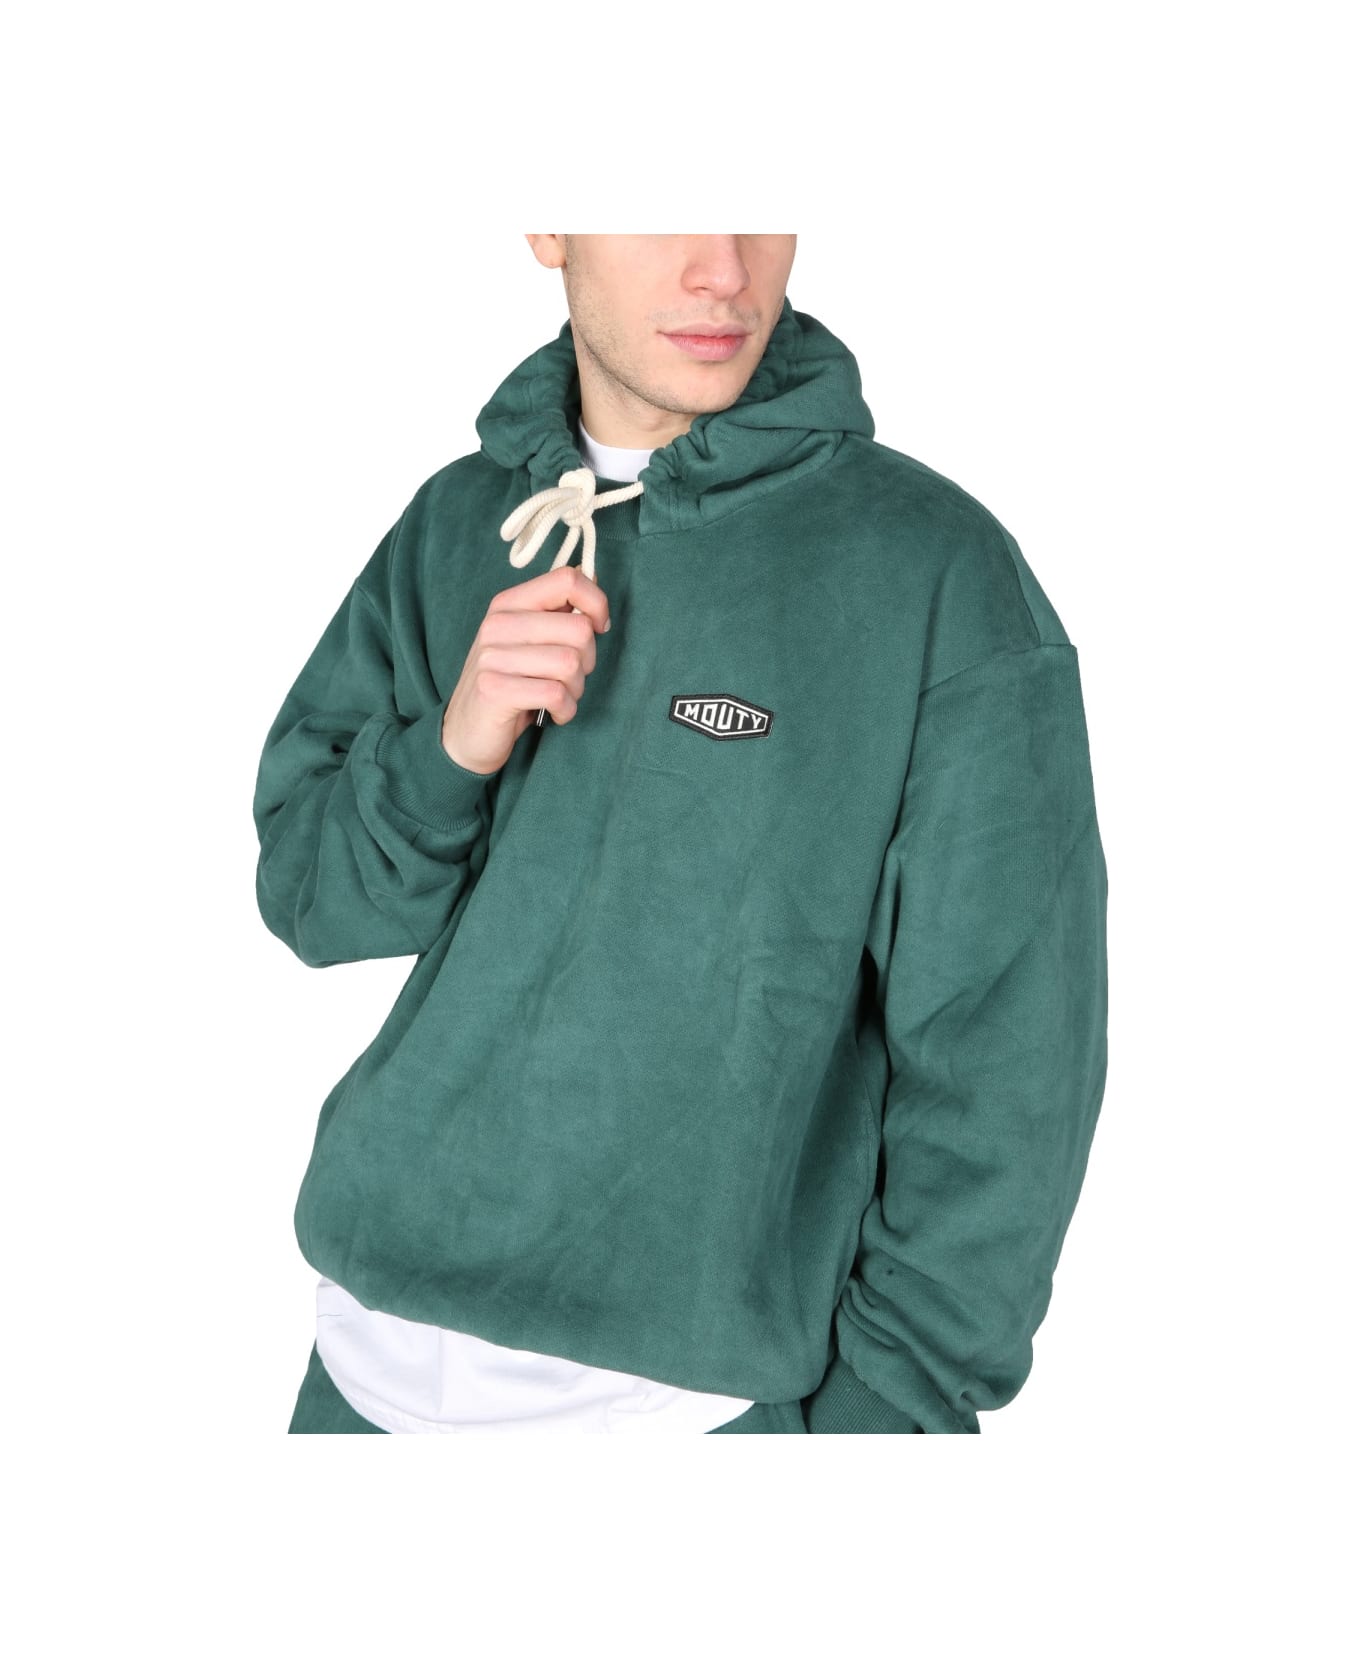 Mouty "dallas" Sweatshirt - GREEN